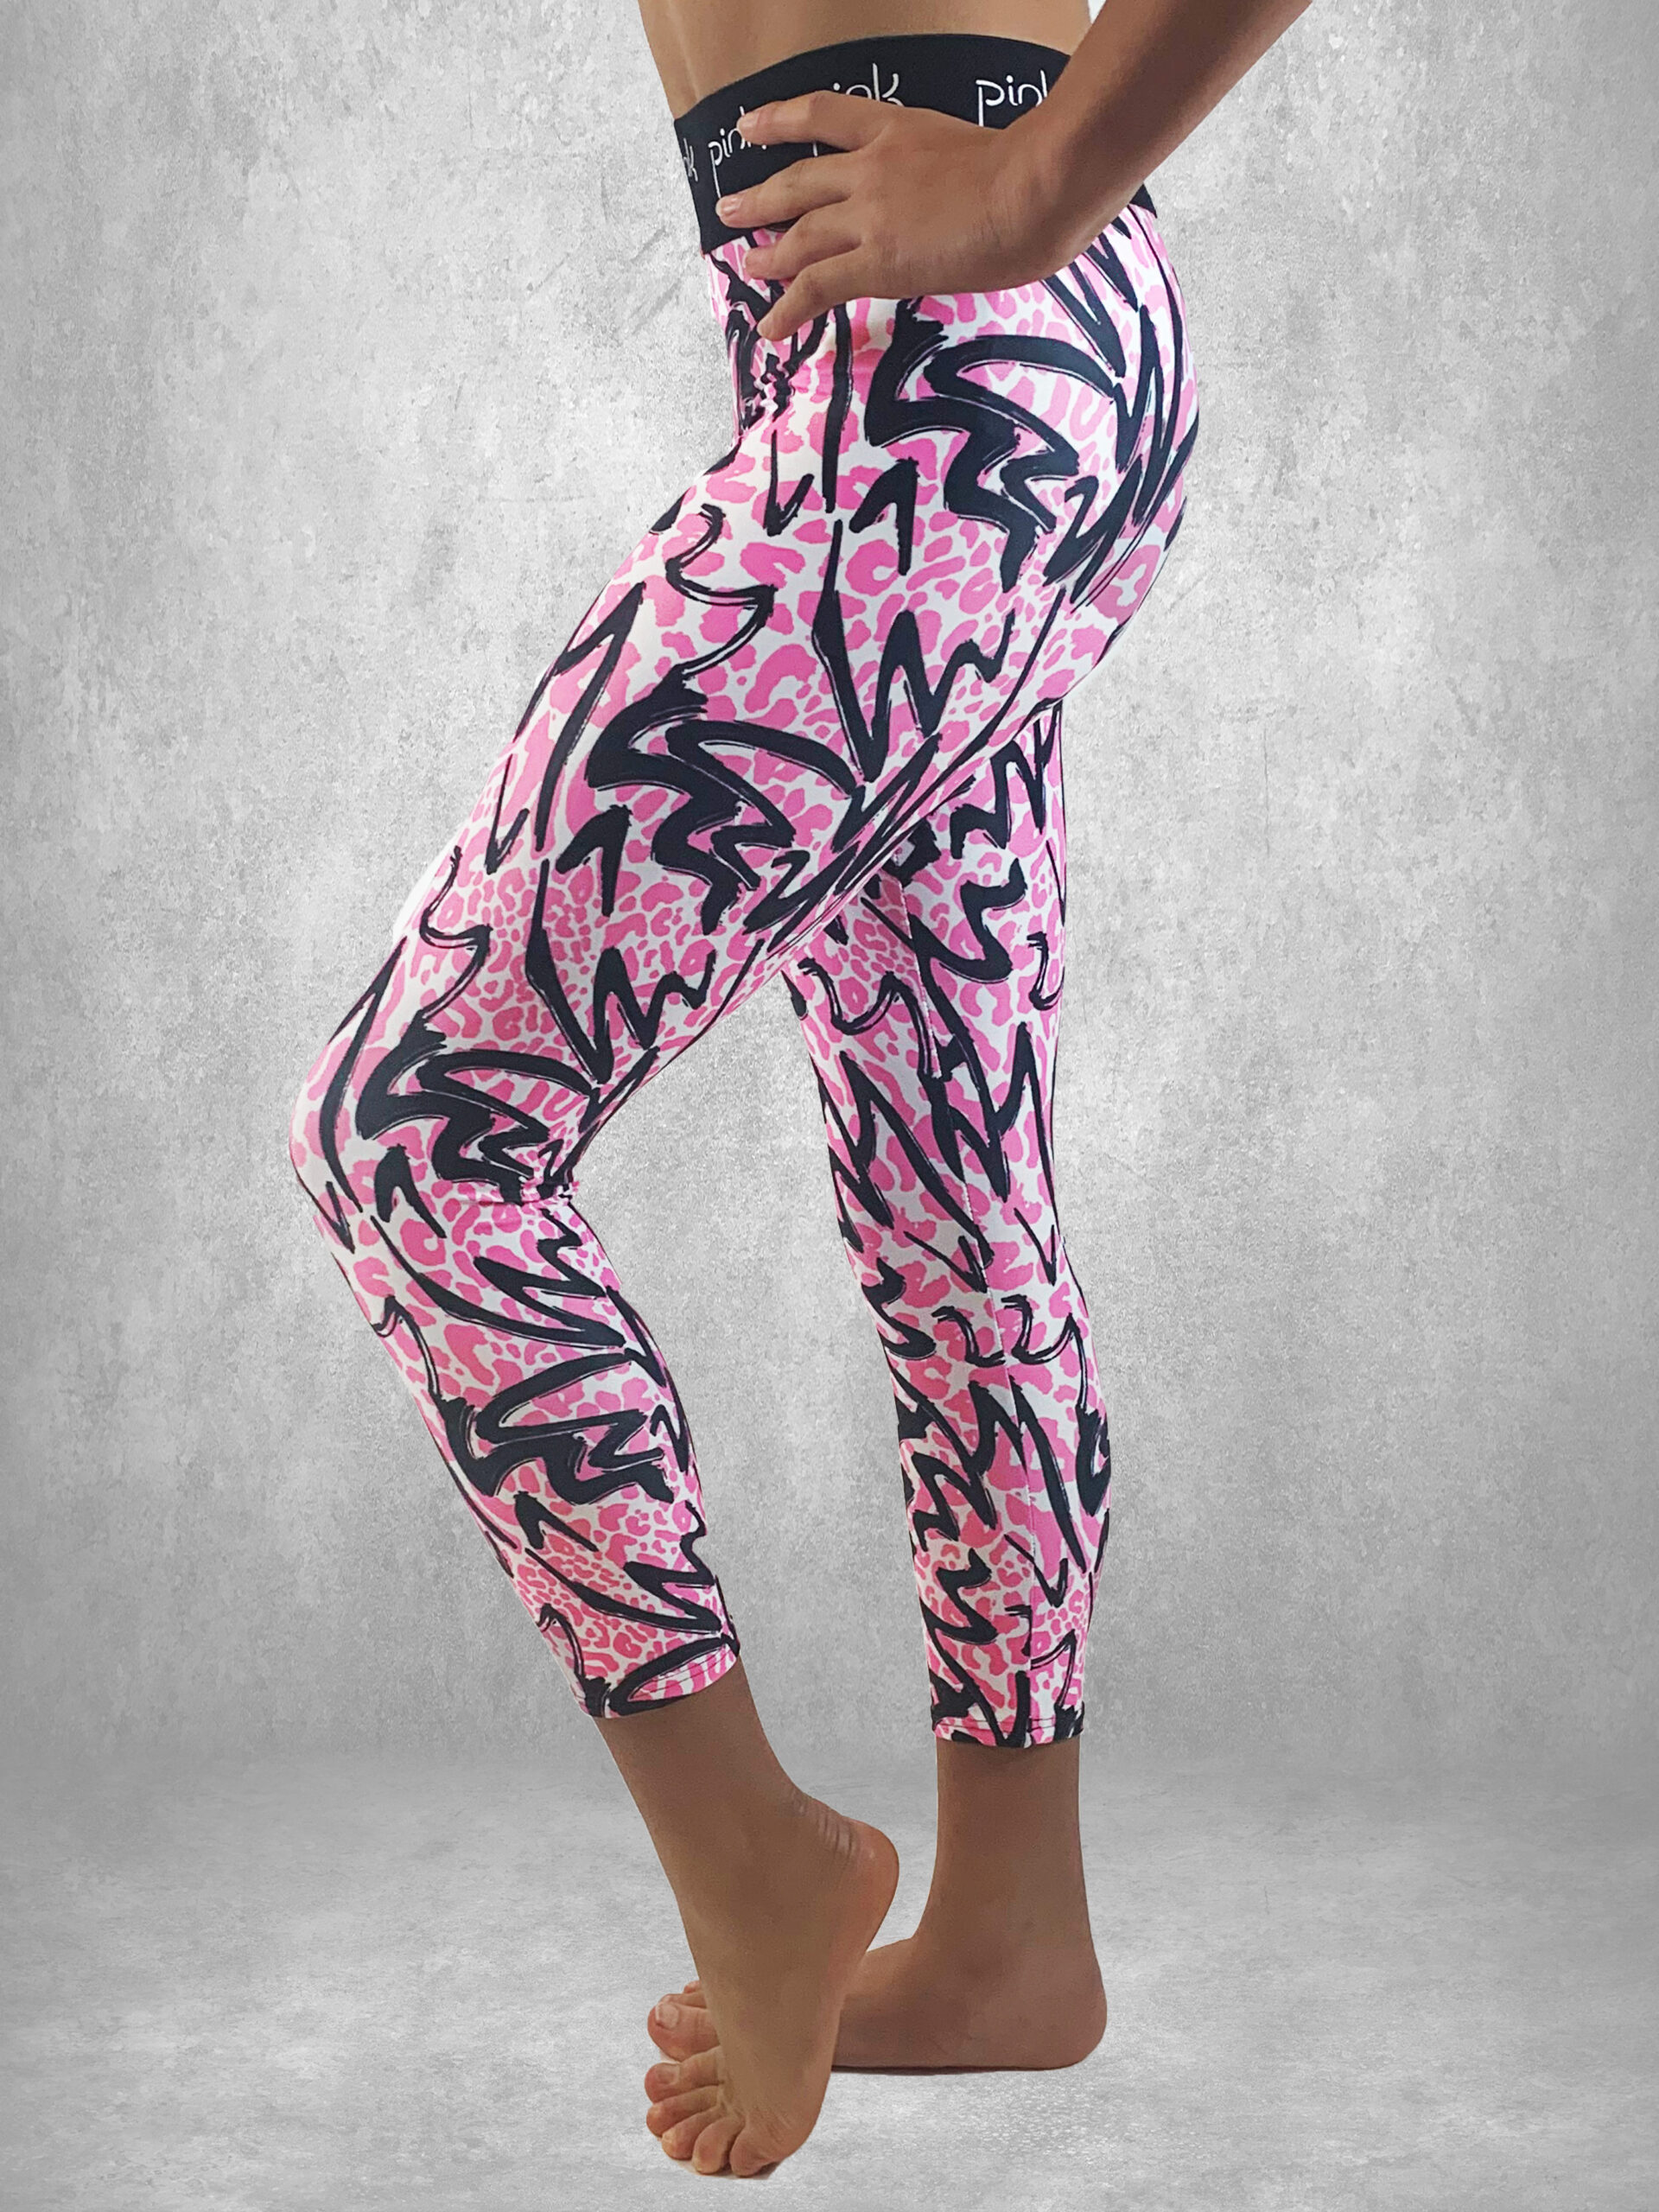 https://pinkleisurewear.co.uk/wp-content/uploads/2021/12/Pink-animal-leggings-3-scaled.jpg